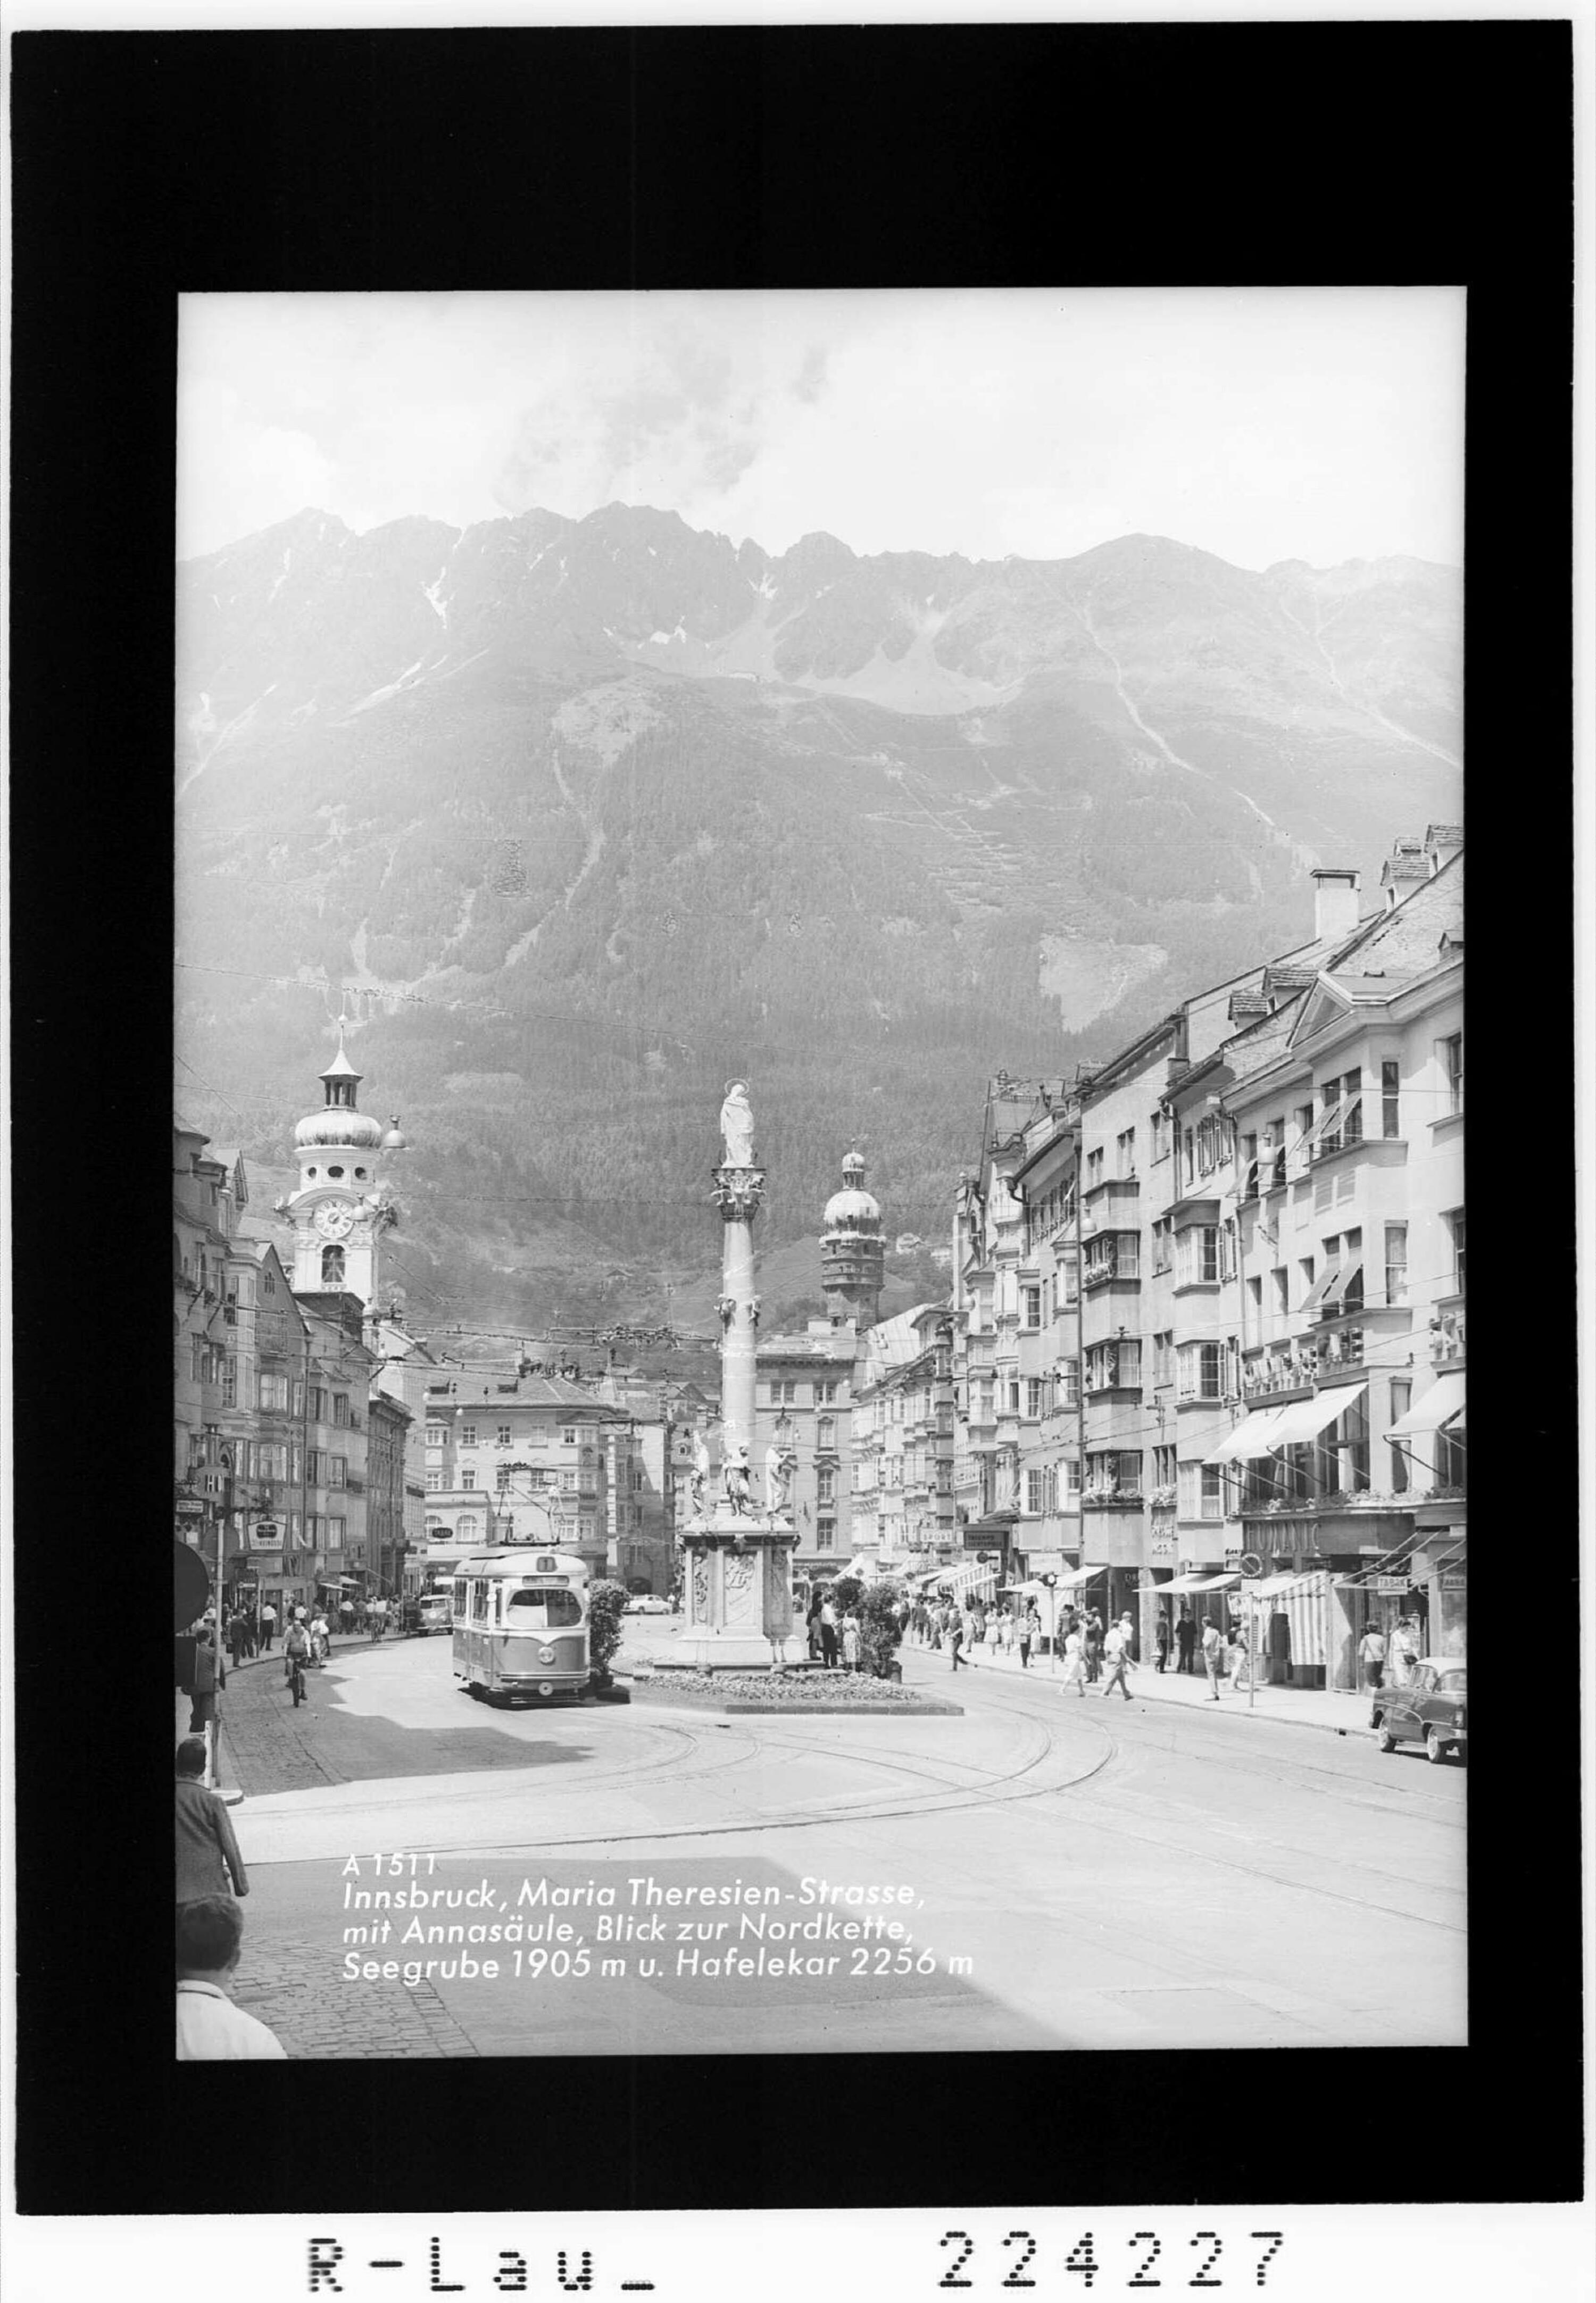 Innsbruck / Maria Theresien Strasse mit Annasäule / Blick zur Nordkette mit Seegrube 1905 m und Hafelekar 2256 m></div>


    <hr>
    <div class=